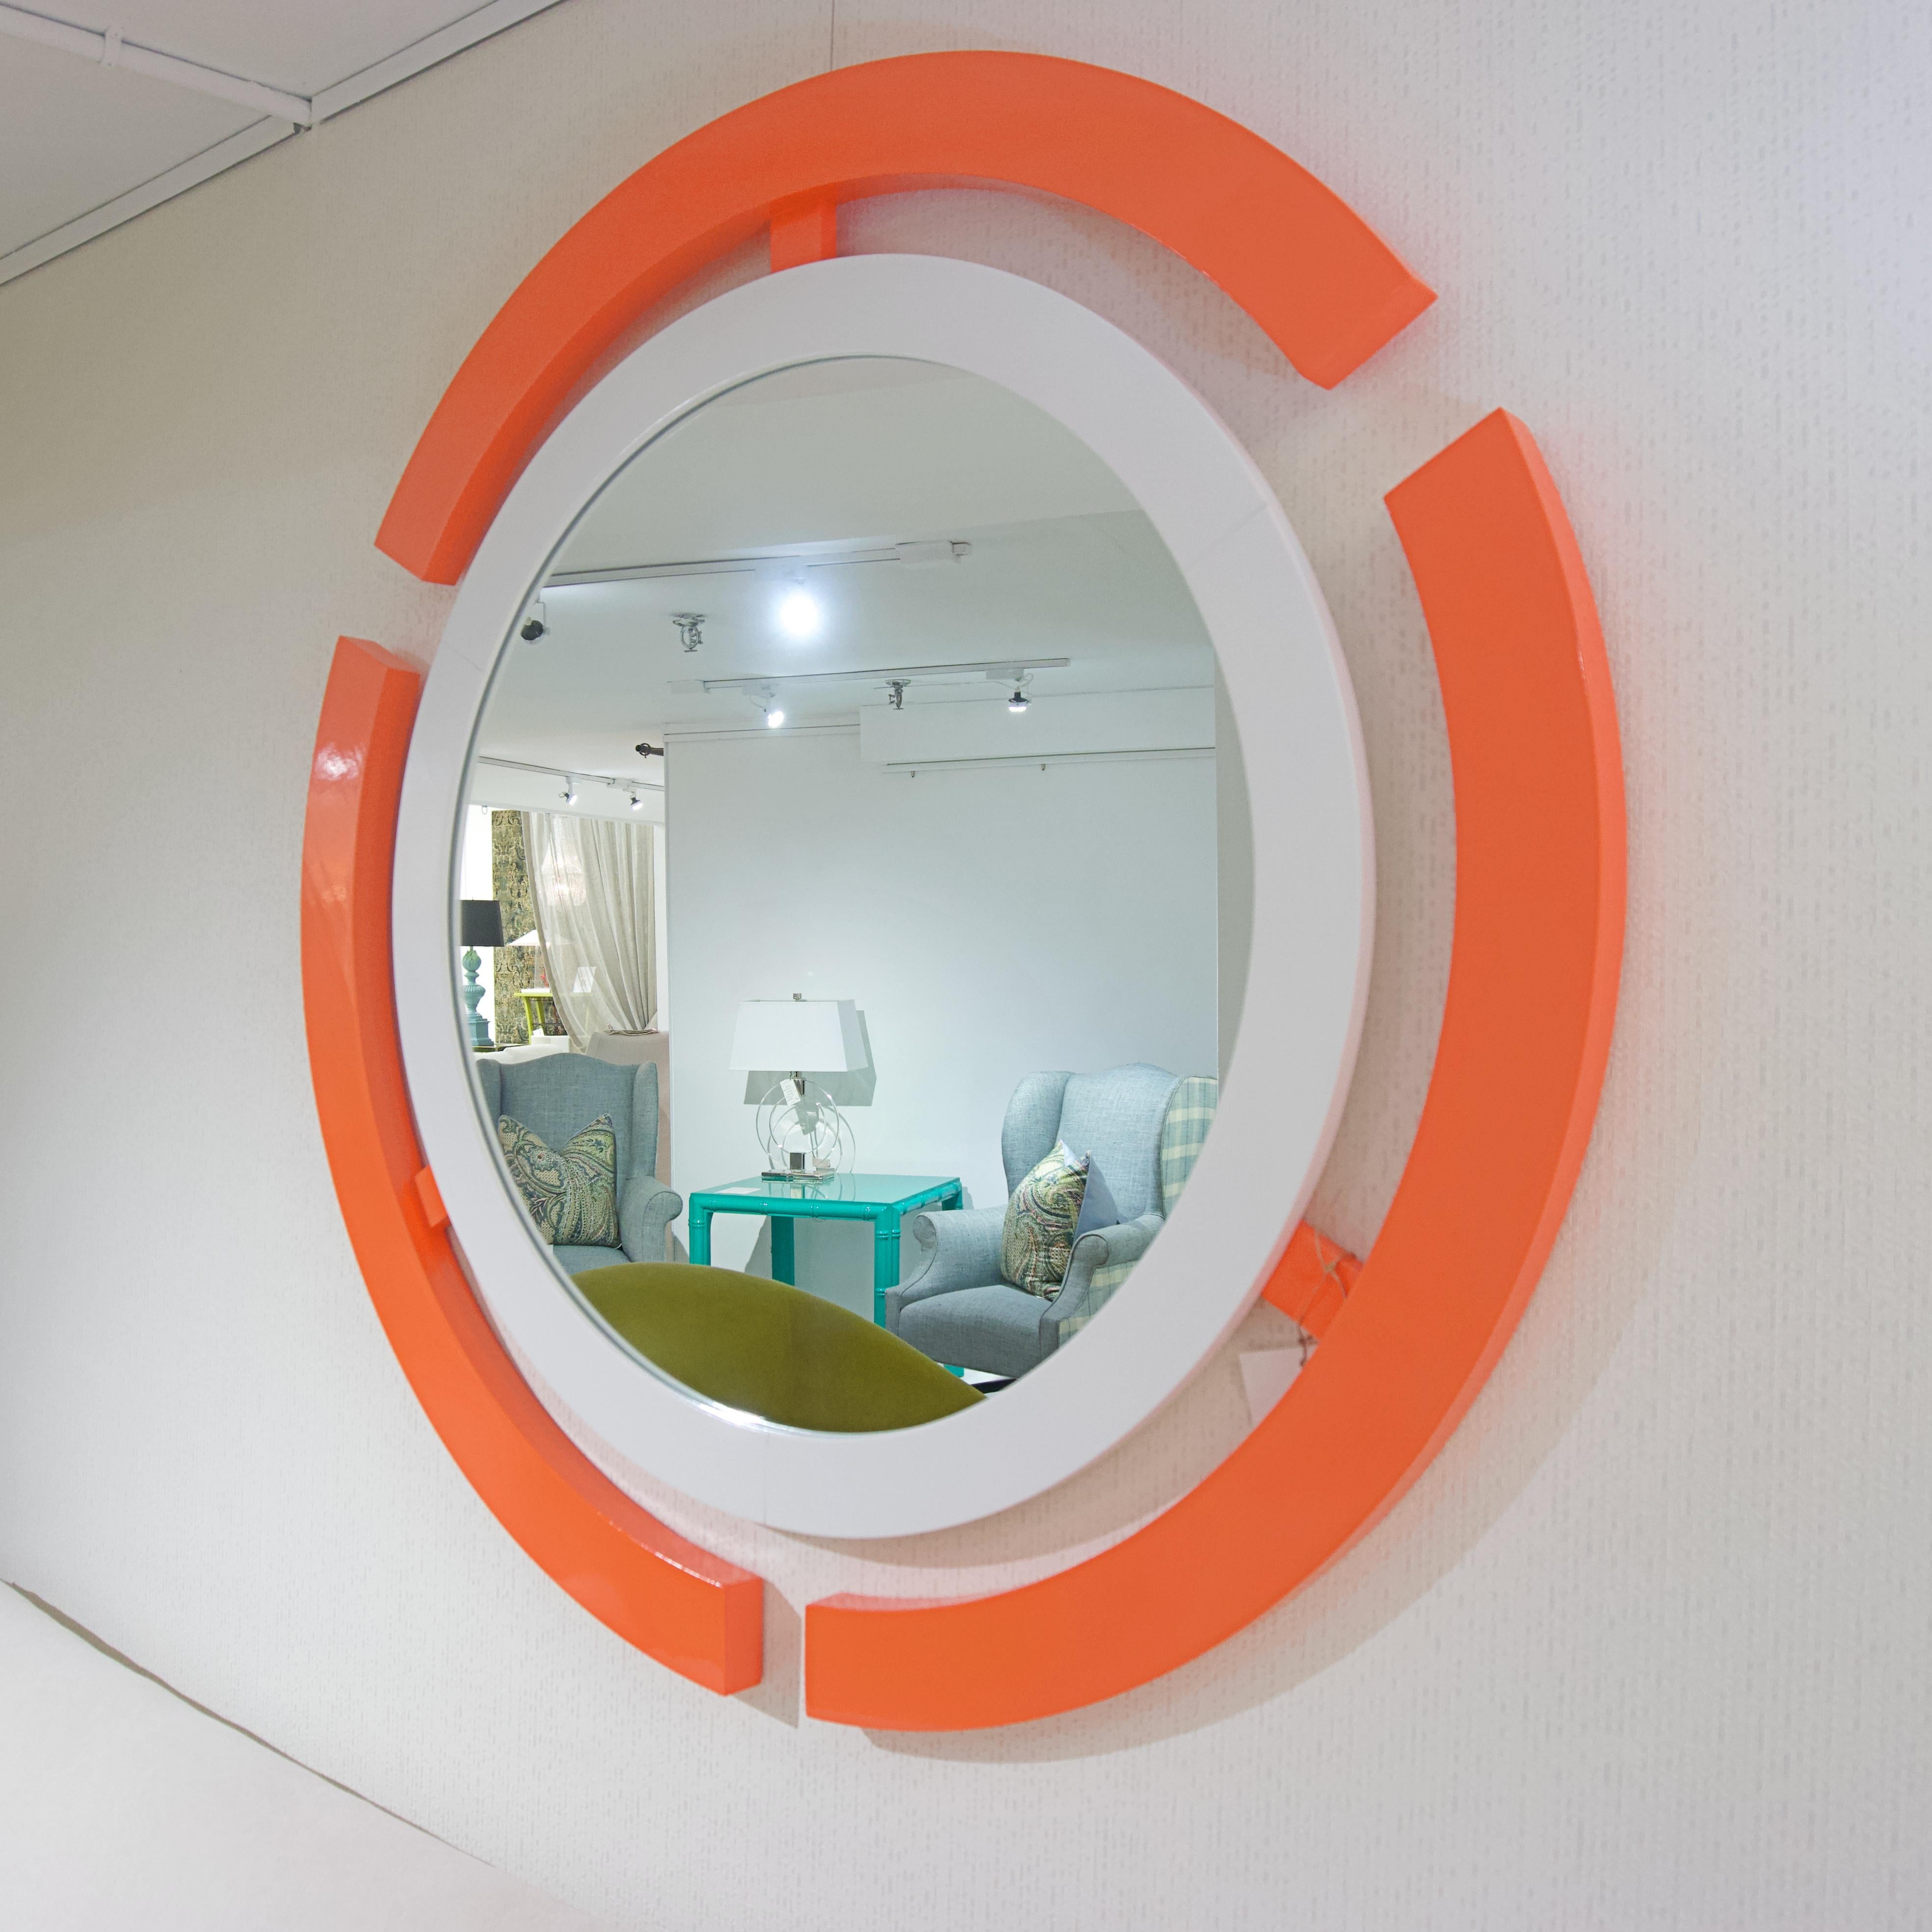 Gestalten Sie diesen Spiegel mit einer beliebigen Farbe oder kaufen Sie ihn so, wie er ist, in orange-weißem Lack. Inspiriert von Science-Fiction-Filmen. Hergestellt aus Pappelholz und Marinelack. 

Abmessungen: 43